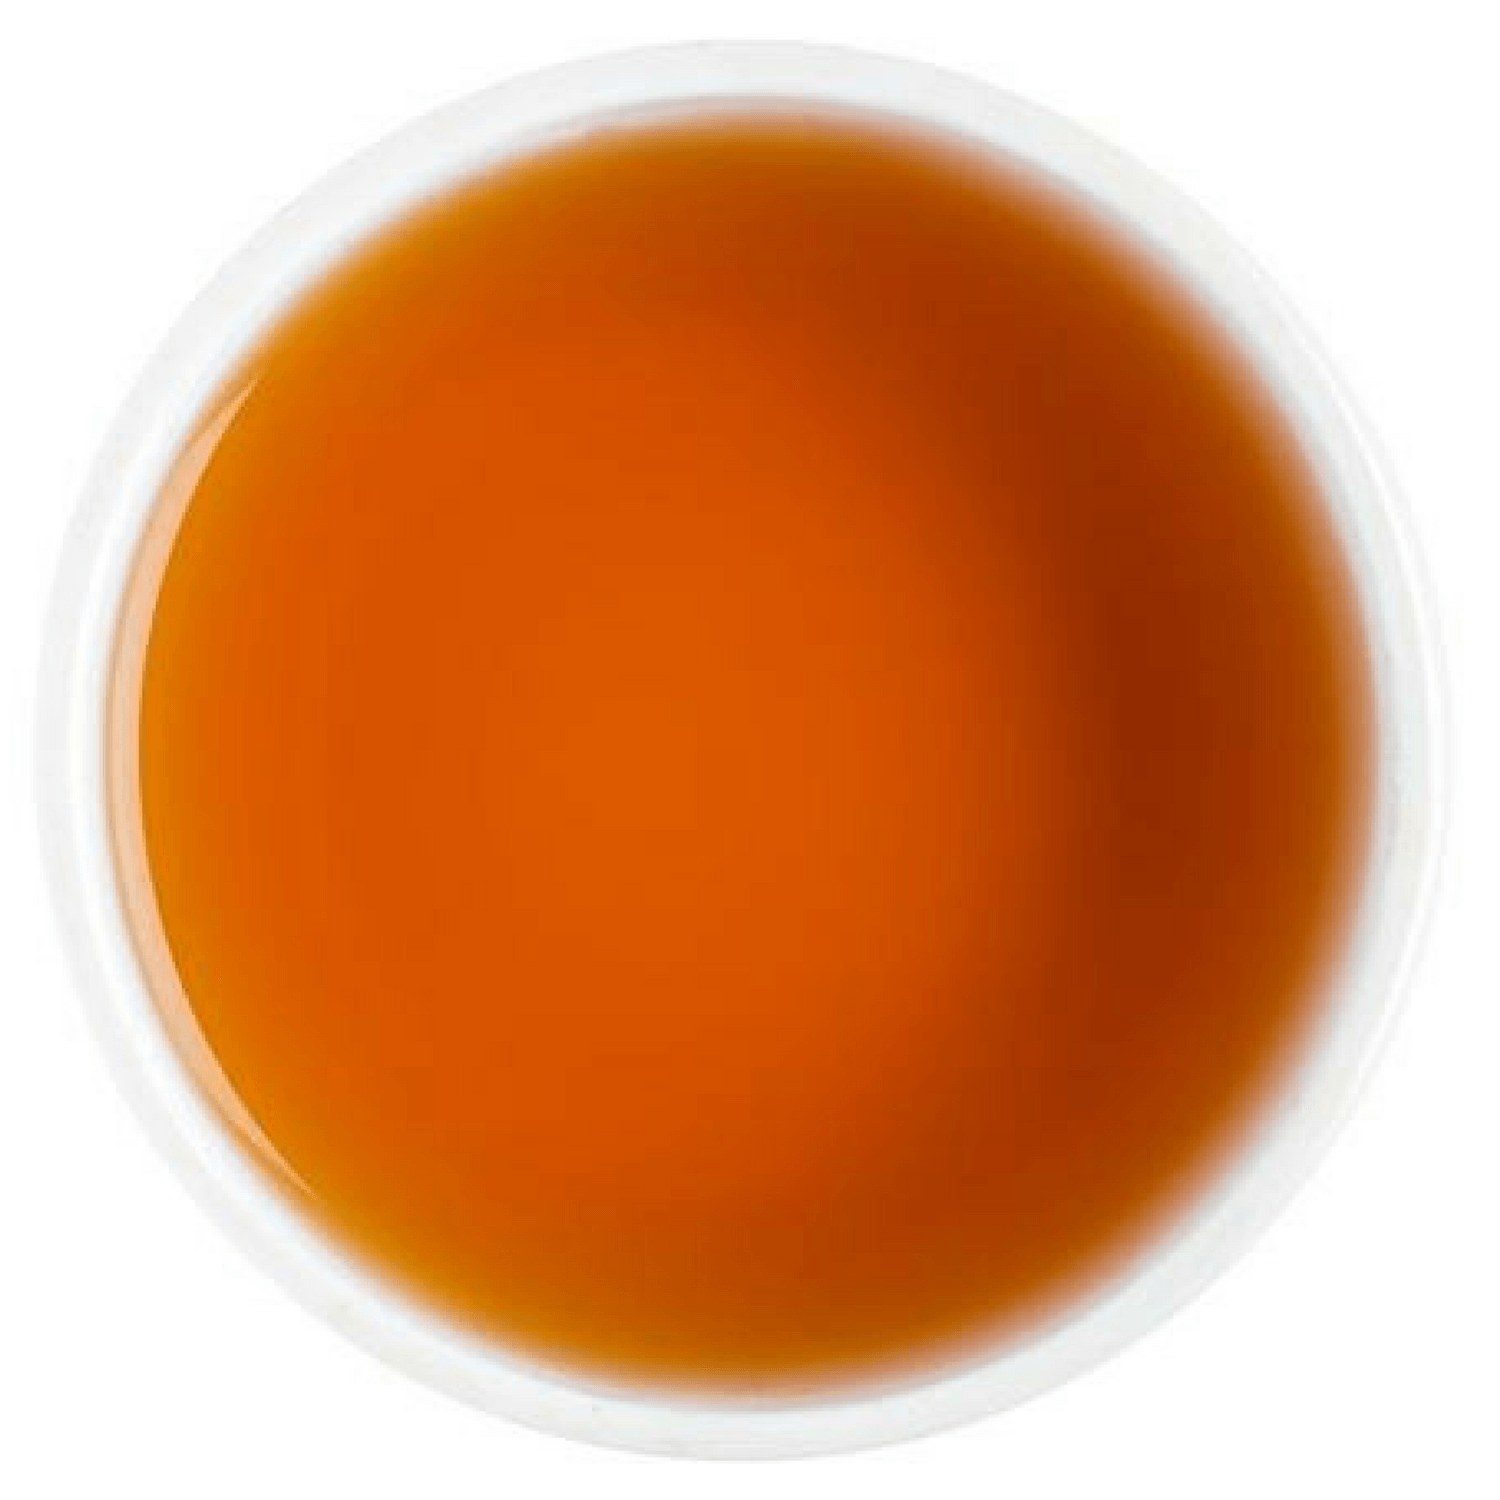 Ginger Black Tea - Tearaja